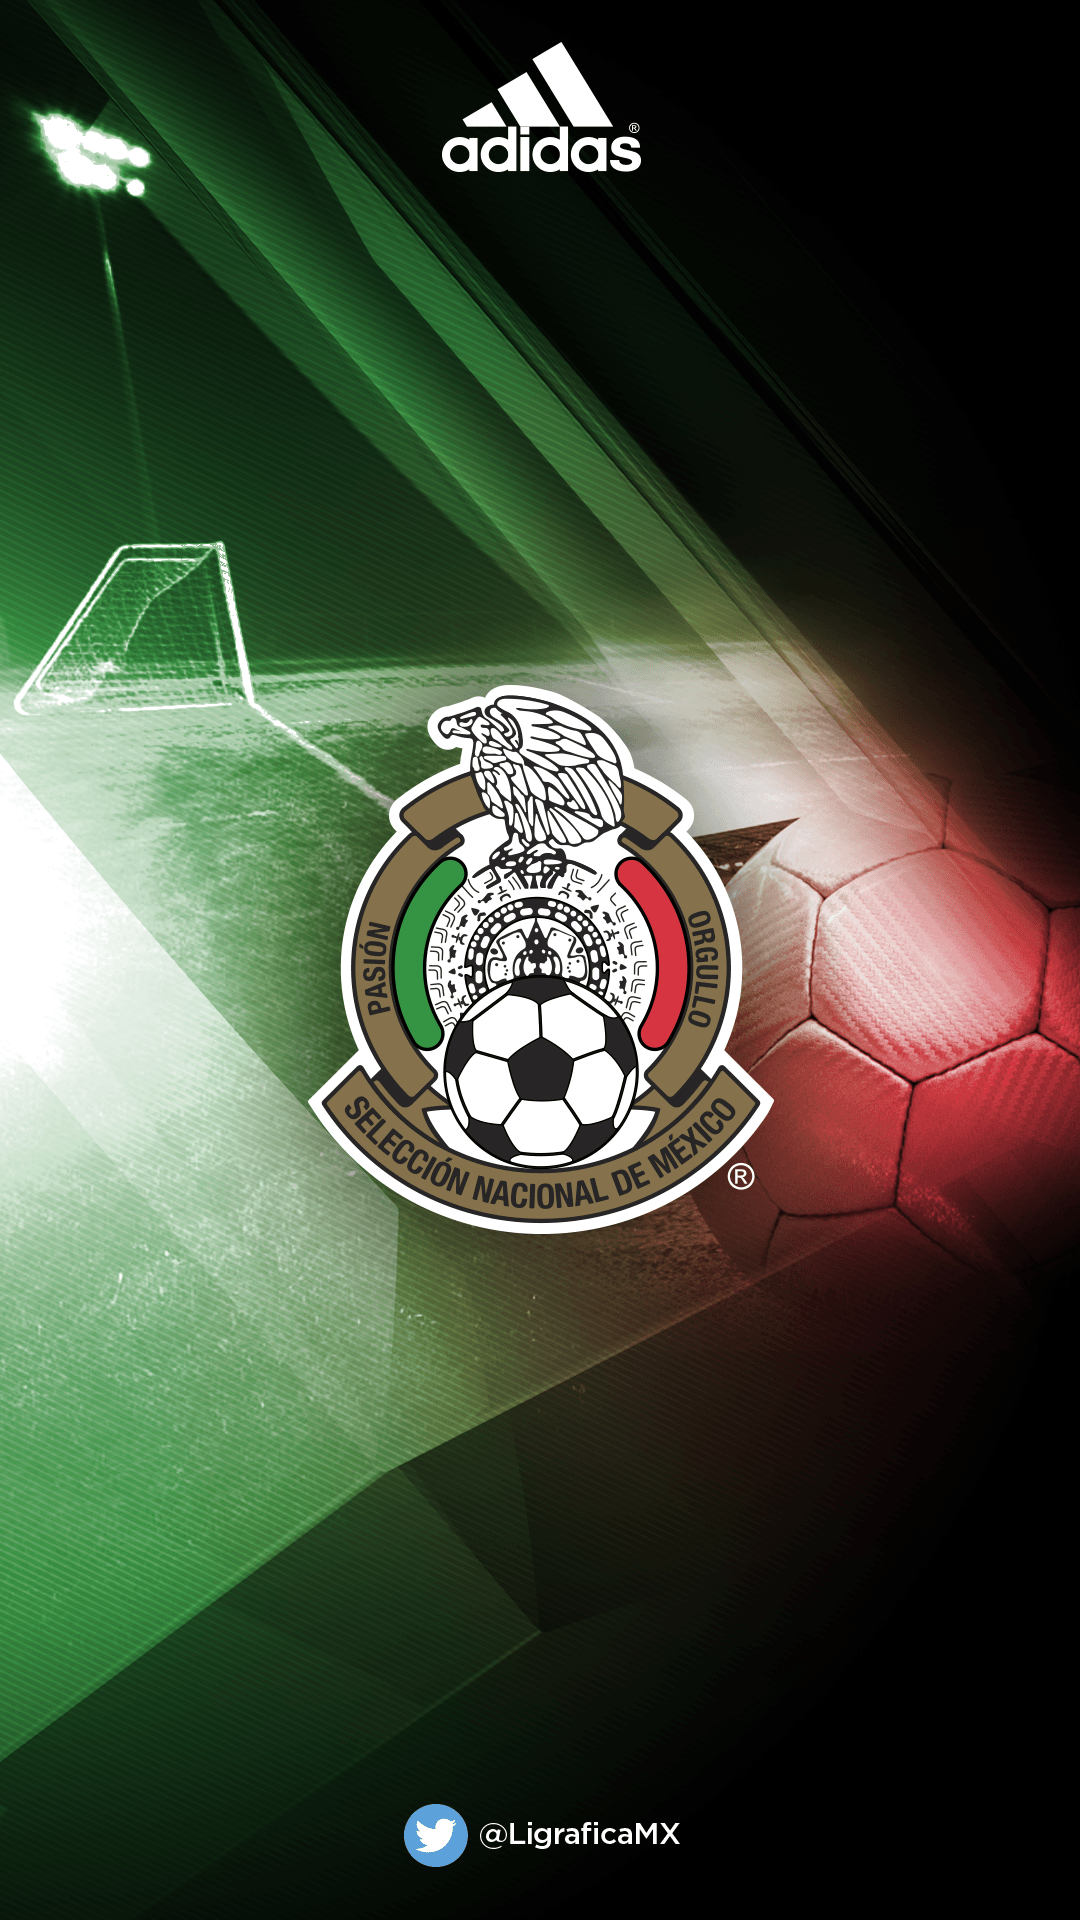 Selección Mexicana #LigraficaMX 21 04 15CTG. Mexico's National Team